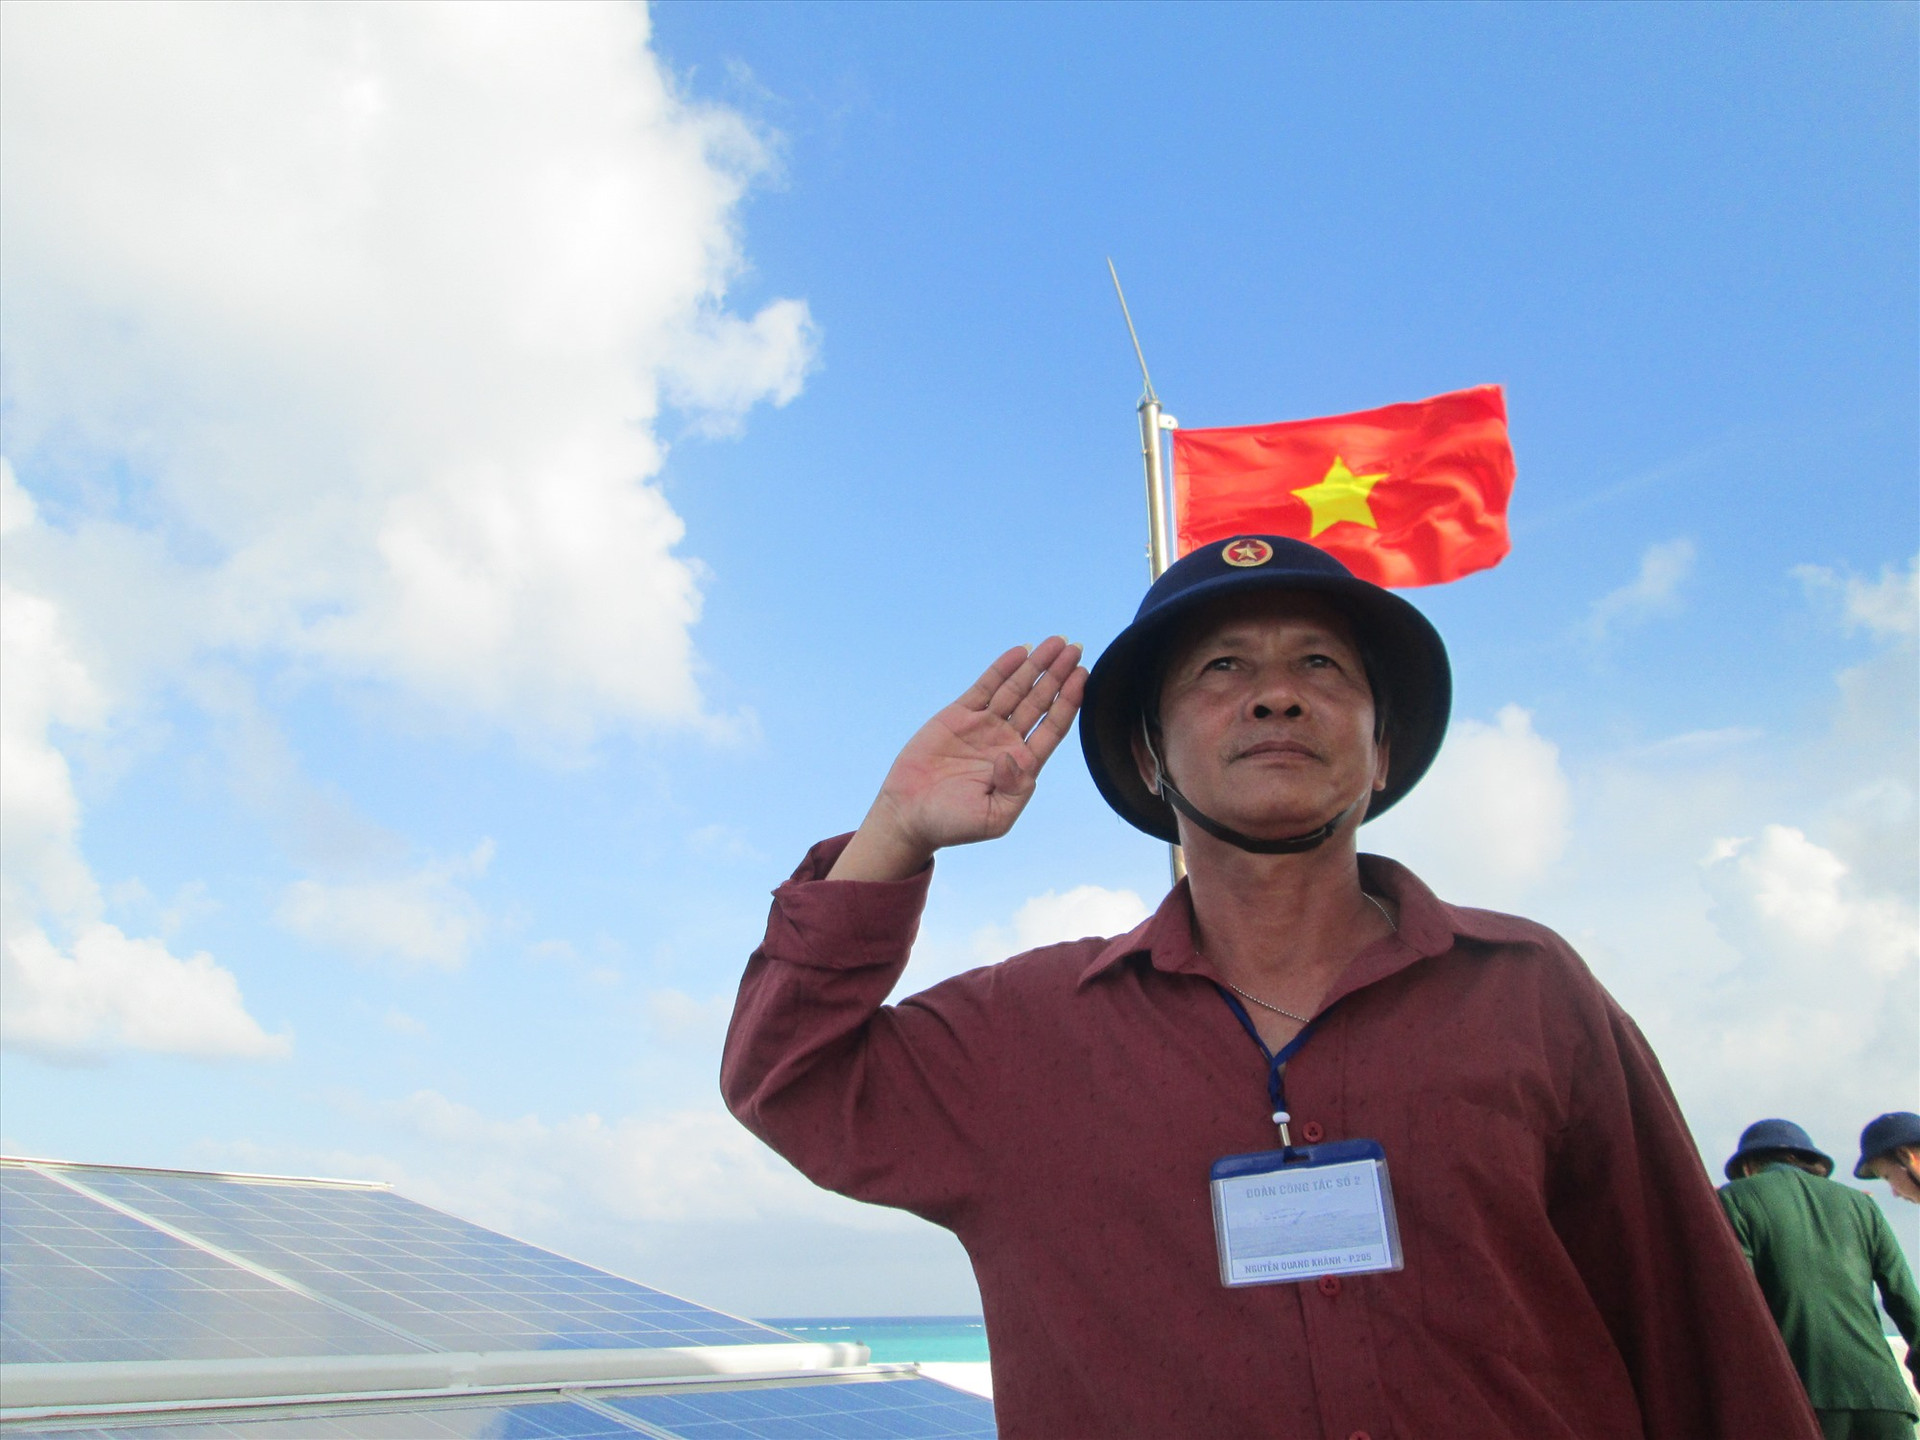 Nguyễn Quang Khánh tham gia đoàn công tác số 2 của Tổng cục Chính trị, Bộ Quốc phòng đến Trường Sa. Ảnh do nhân vật cung cấp